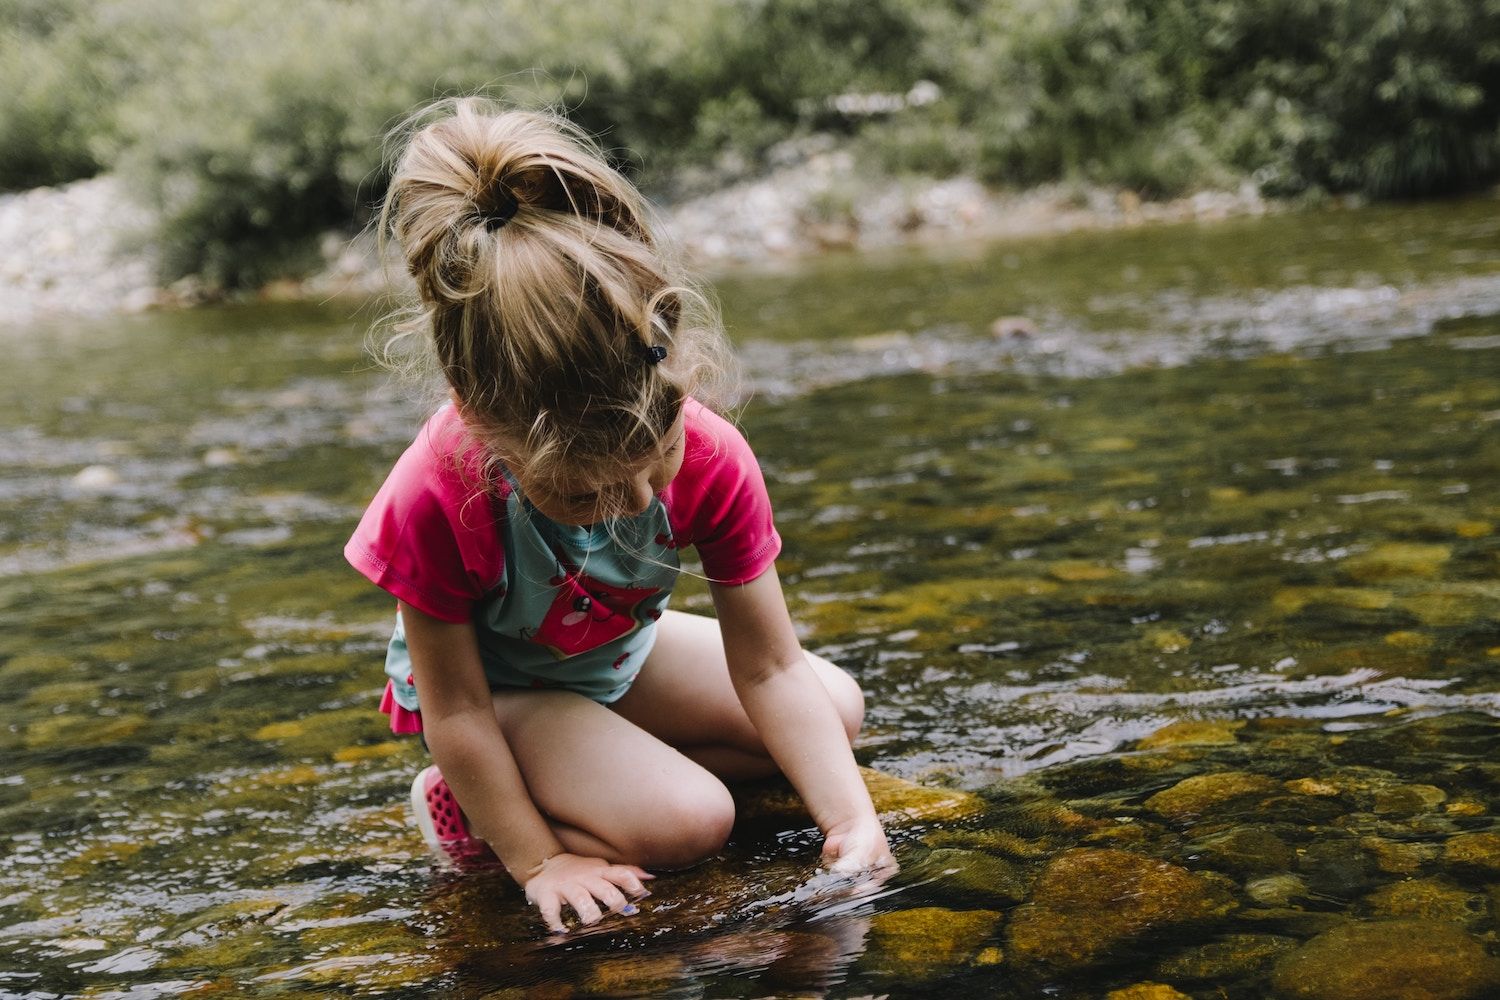 WALDFORSCHER Waldkindergarten - Ein Mädchen in Sommerkleidung und mit Pferdeschwanz spielt in einem seichten Bach. Nachhaltiges Erleben in unserer Naturkita.